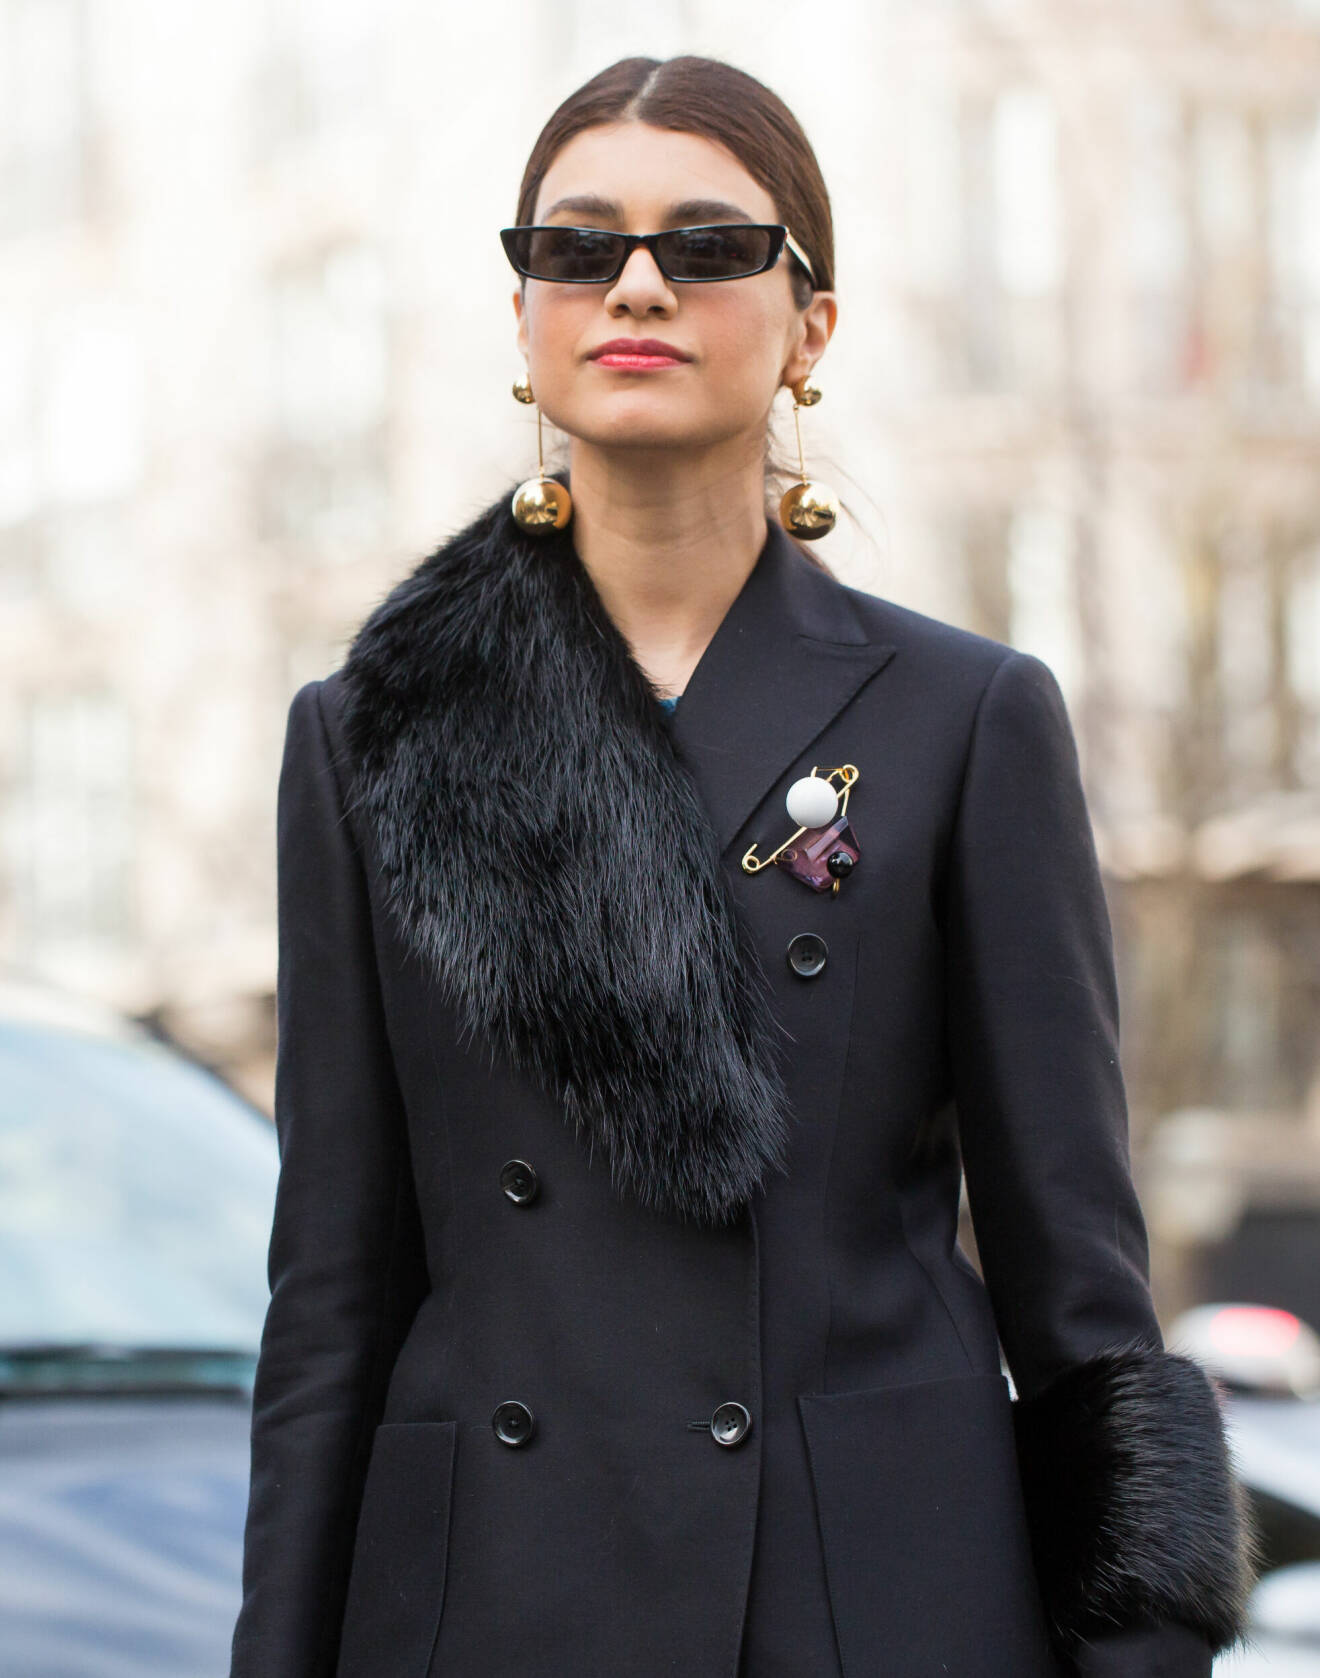 Trendig gäst på modeveckan i Paris iklädd svart kavaj och maffiga örhängen.